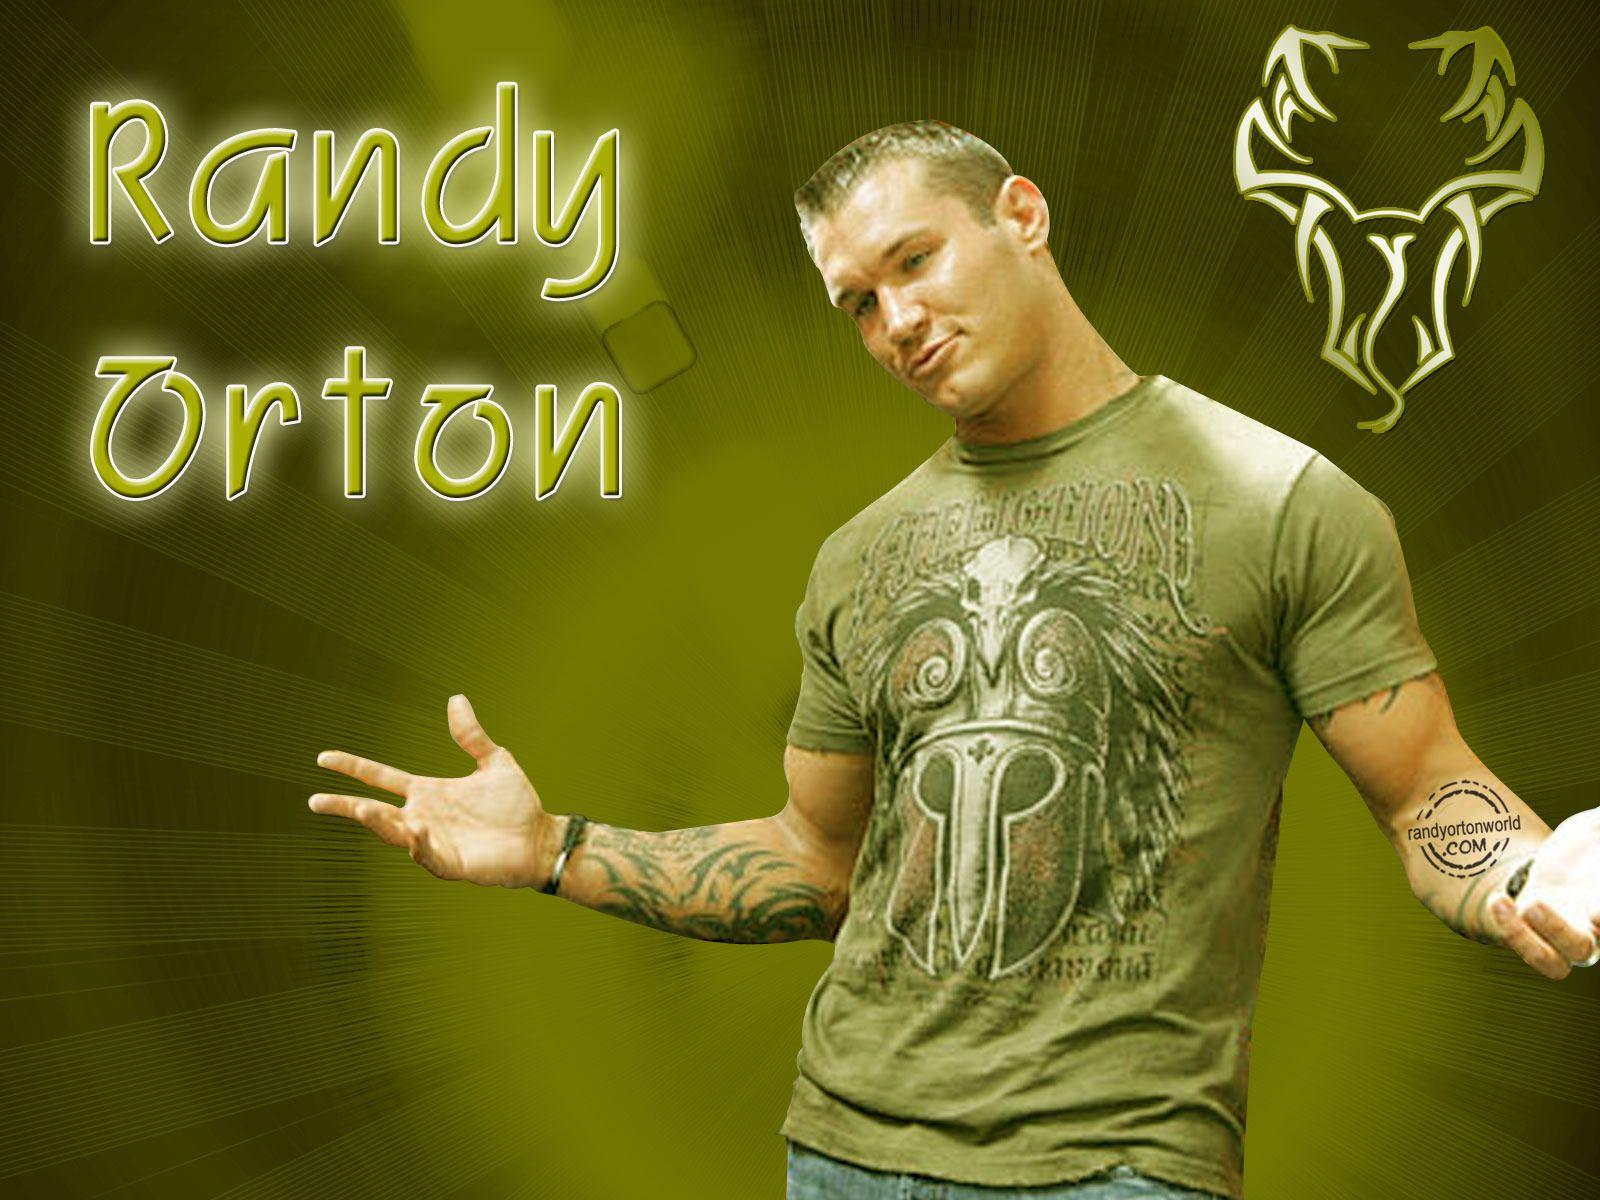 Randy Orton Wallpaper HD